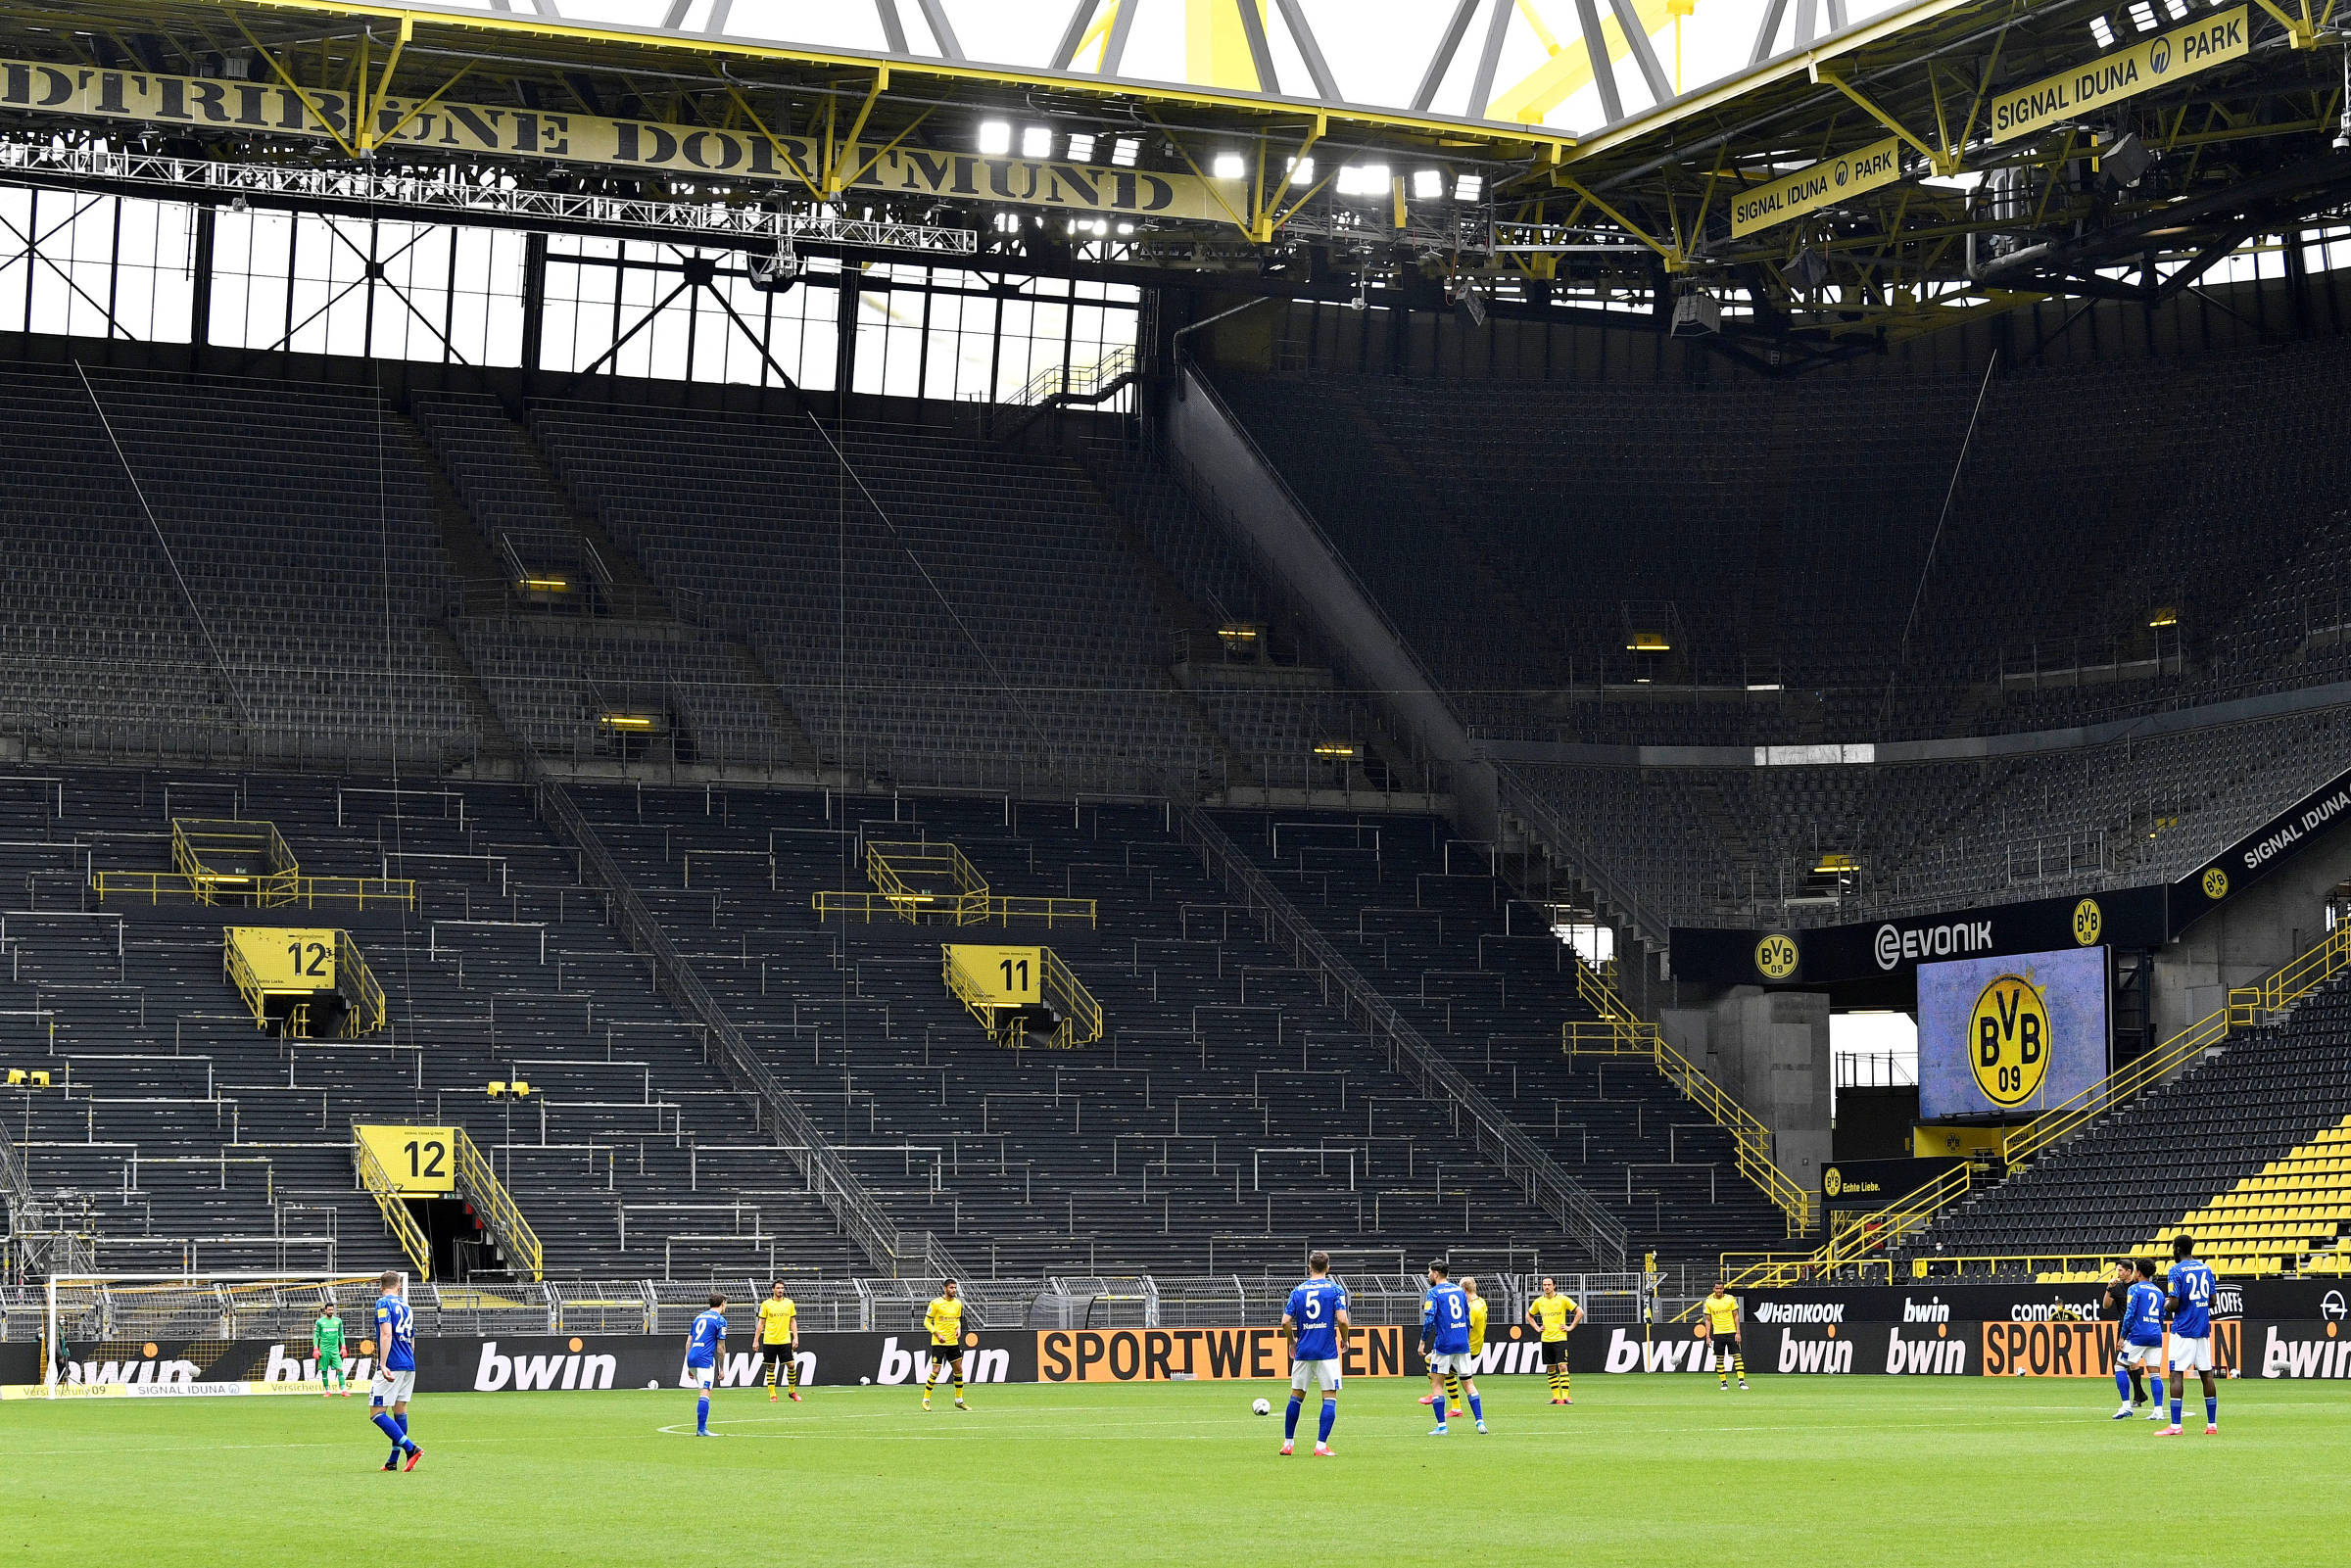 Gol de futsal, tá? 👏🏻 Bela triangulação do @Borussia Dortmund A @Bu